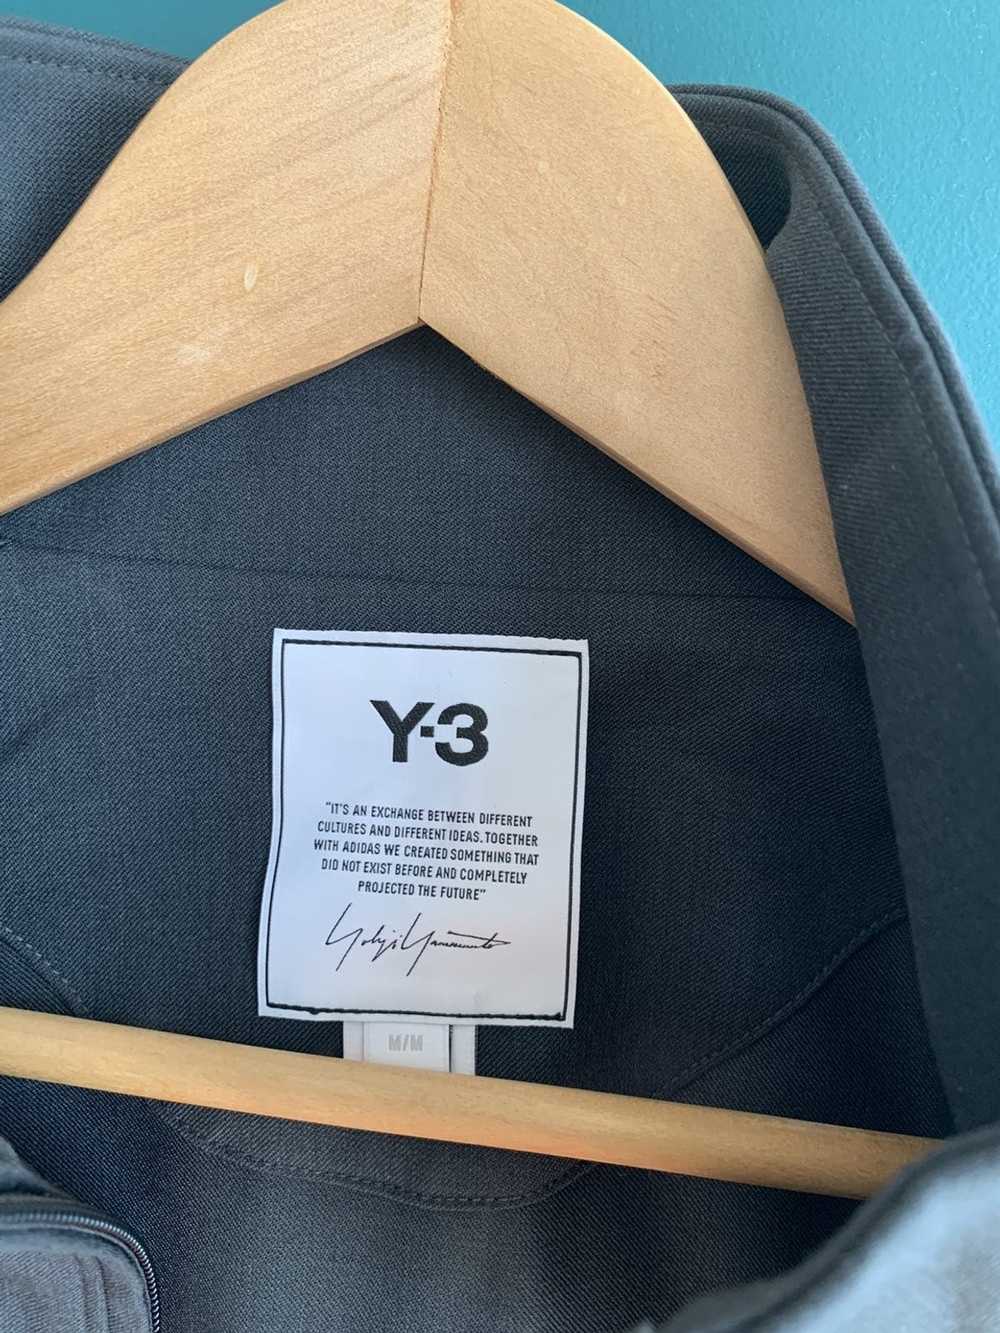 Y-3 Y-3 Grey Refined Wool Track Jacket - image 3